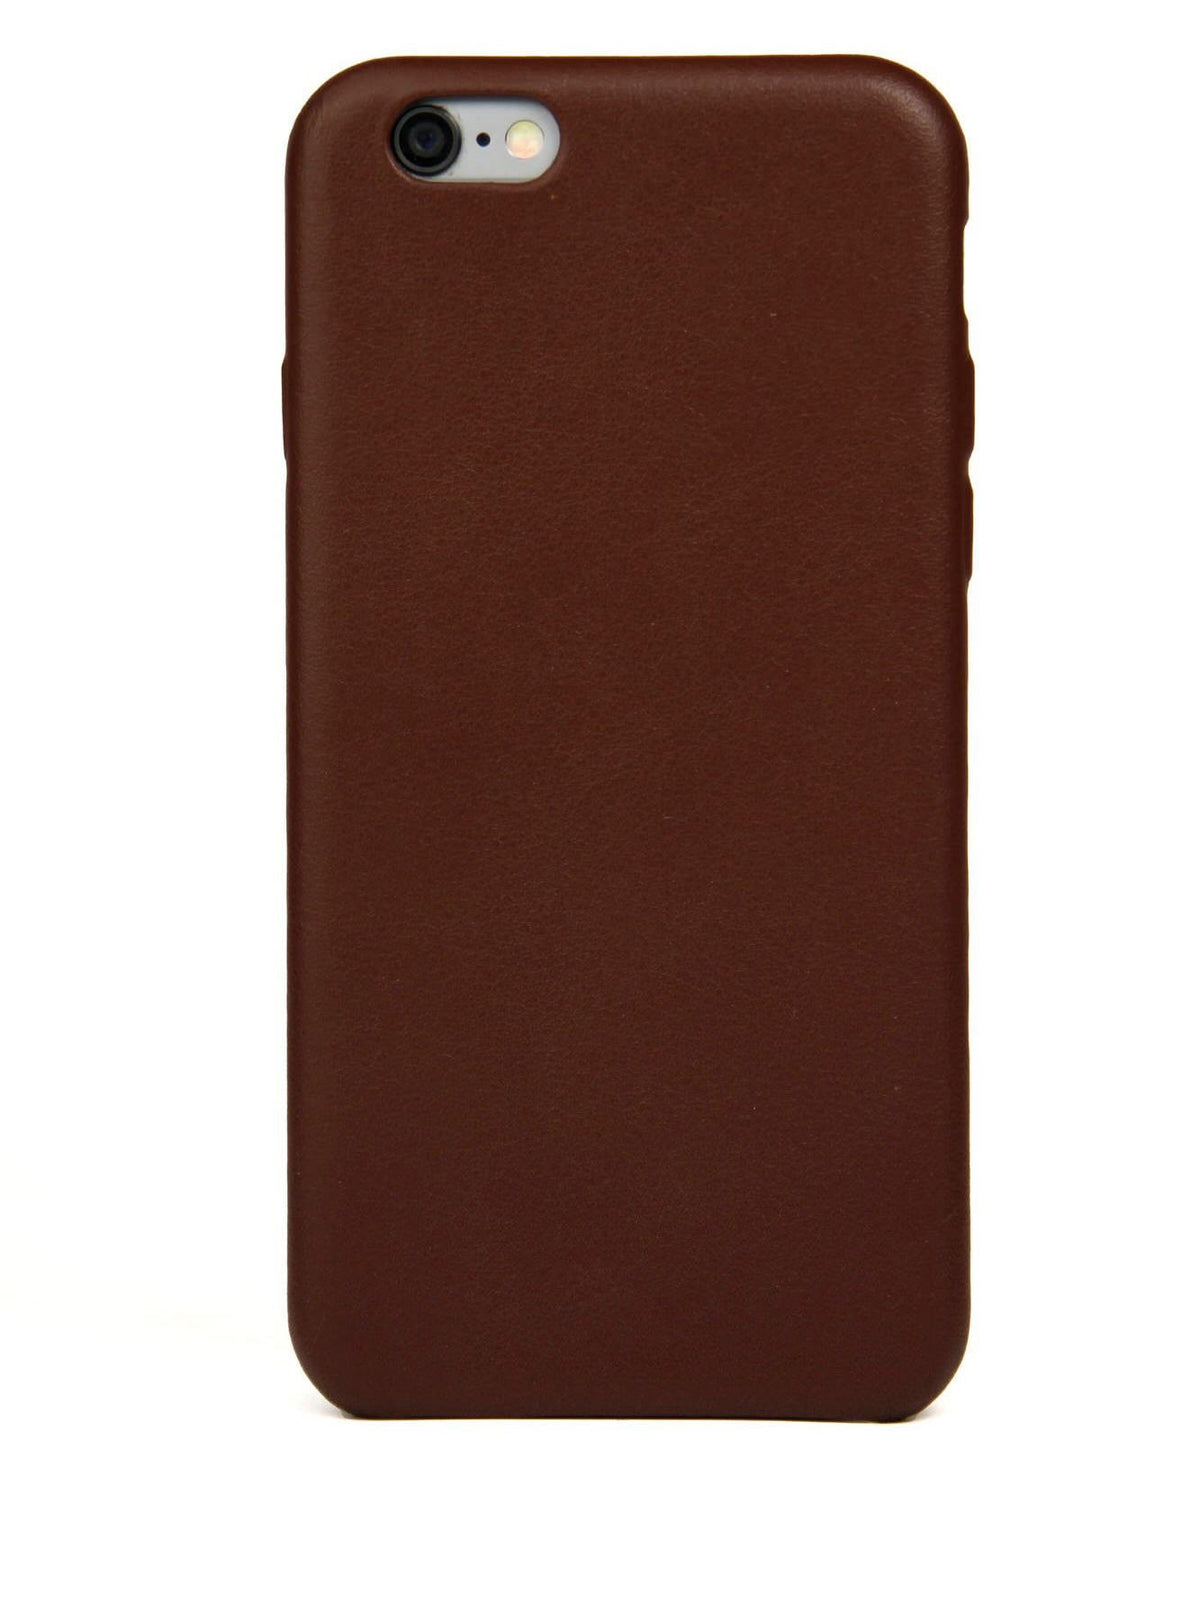 Coque pour iPhone 6, cuir marron